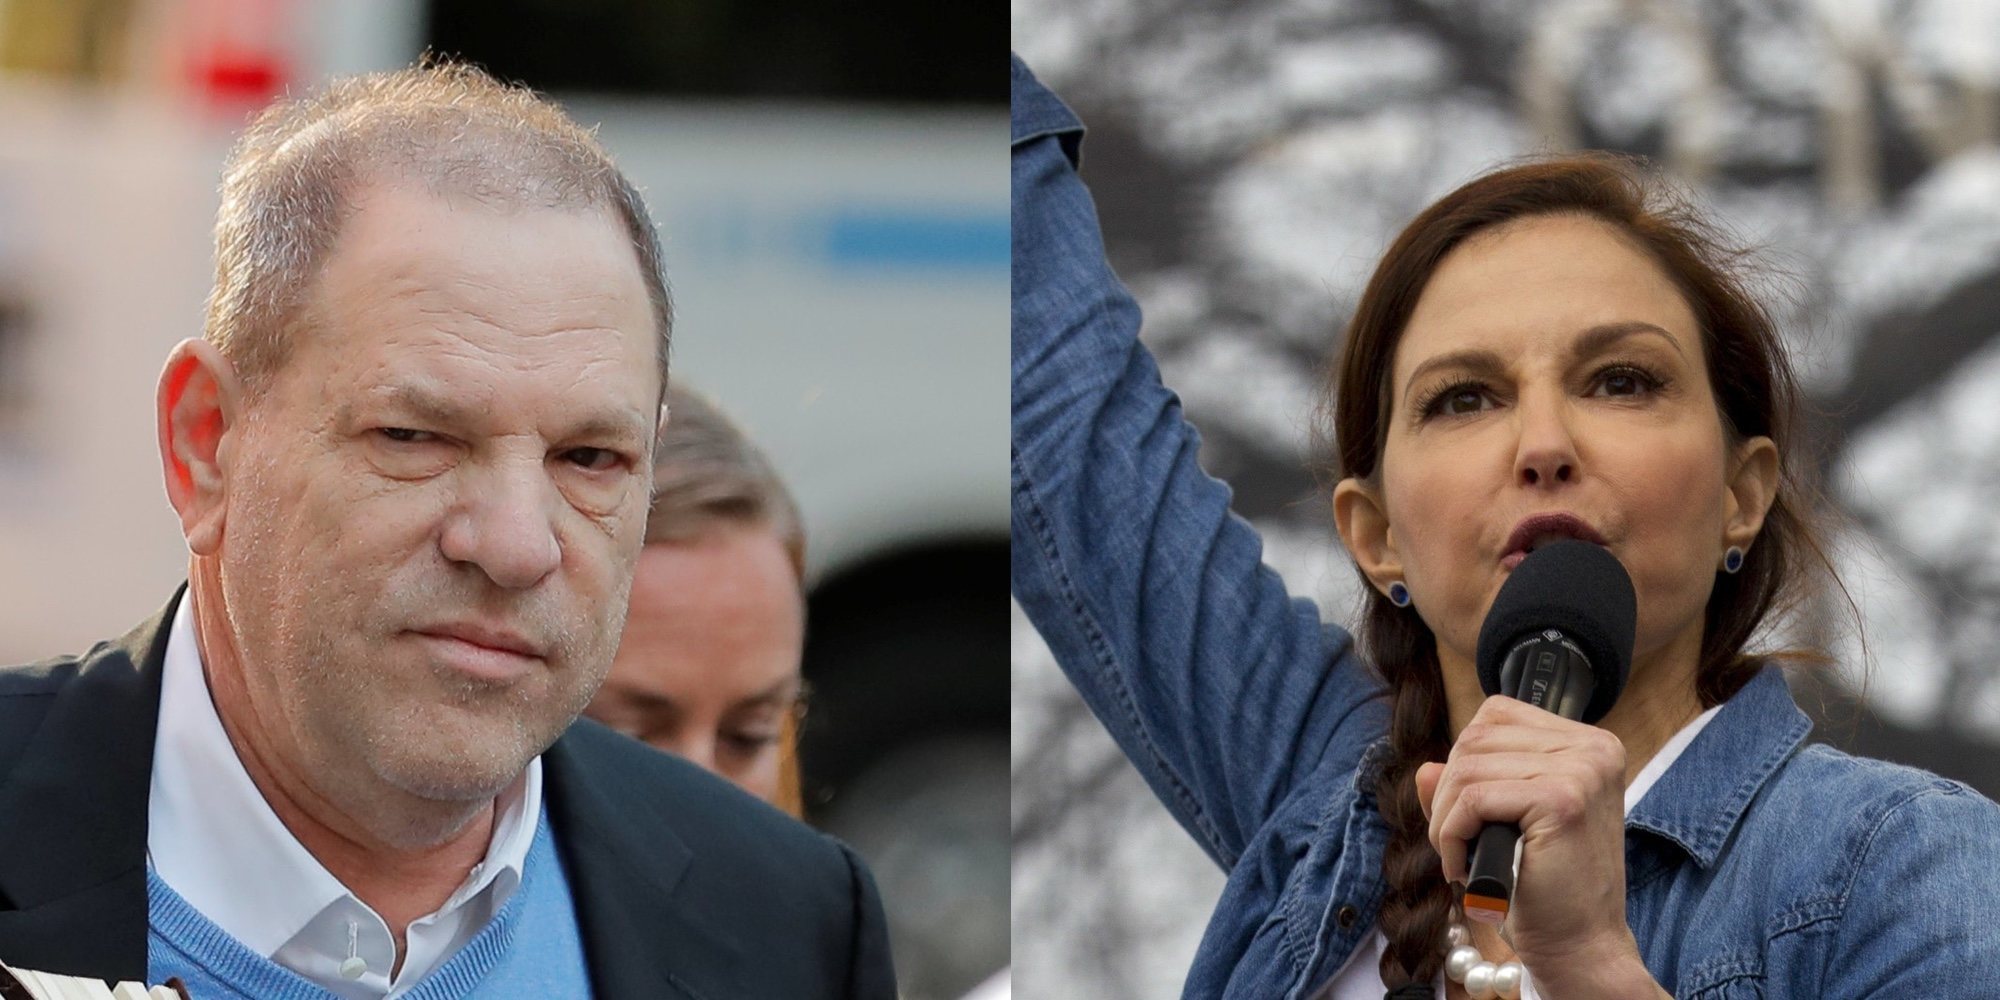 El juez desestima la denuncia de acoso sexual de Ashely Judd contra Harvey Weinstein